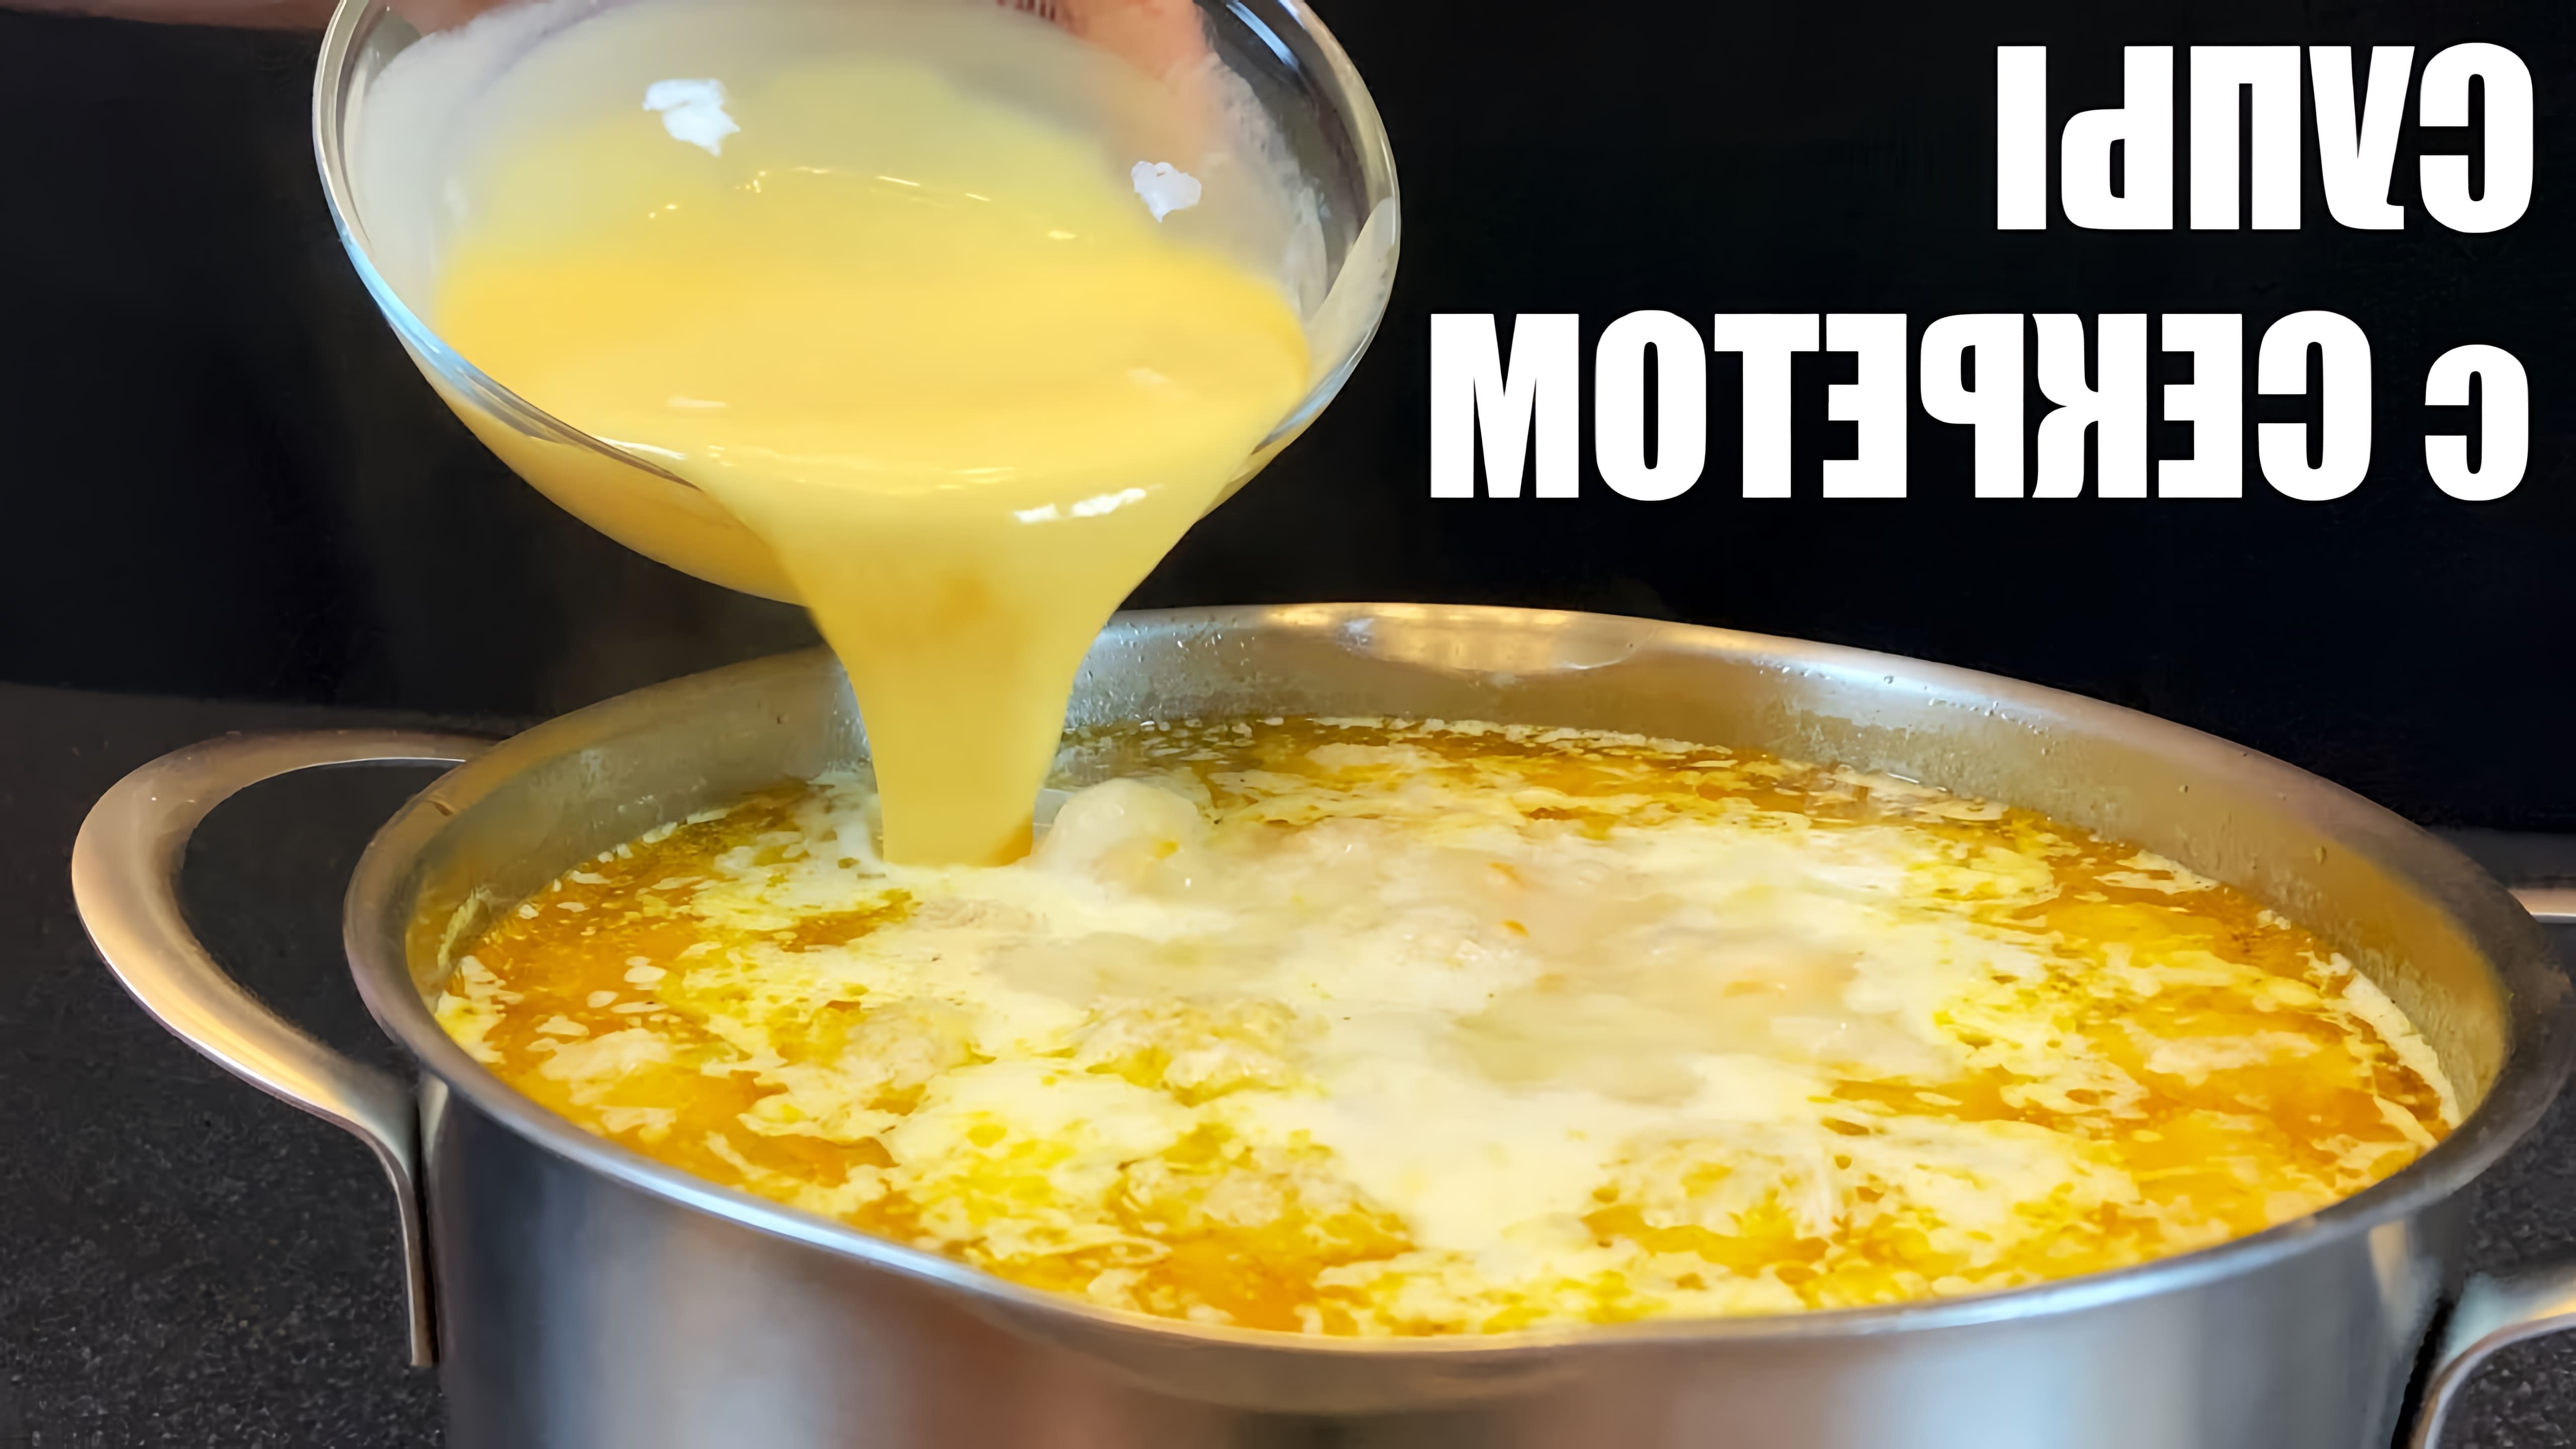 В этом видео автор показывает четыре рецепта супов с секретом